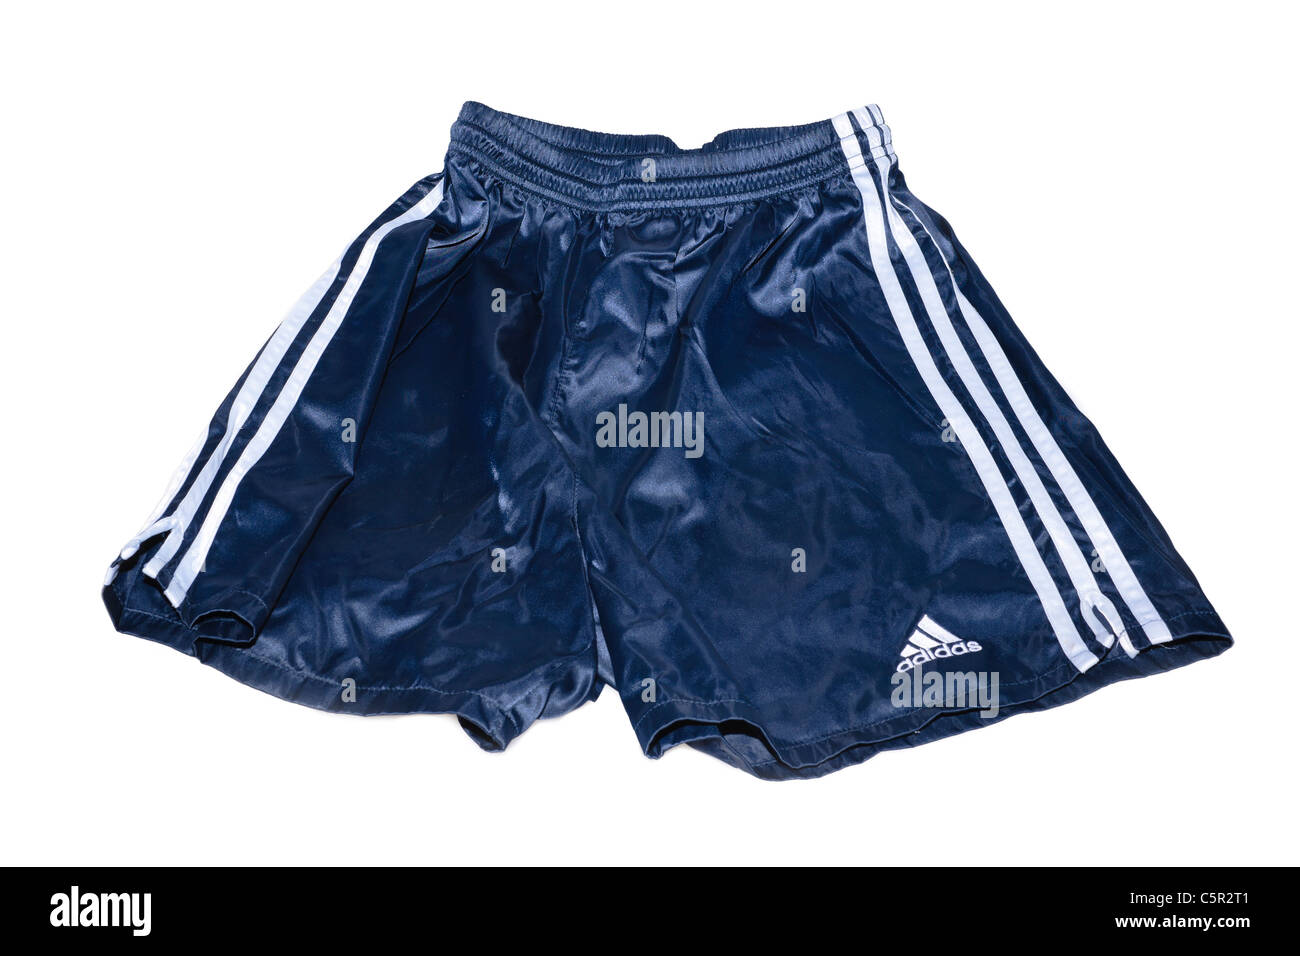 Un par de nylon vintage de adidas Football sportswear pantalones cortos Fotografía de stock -